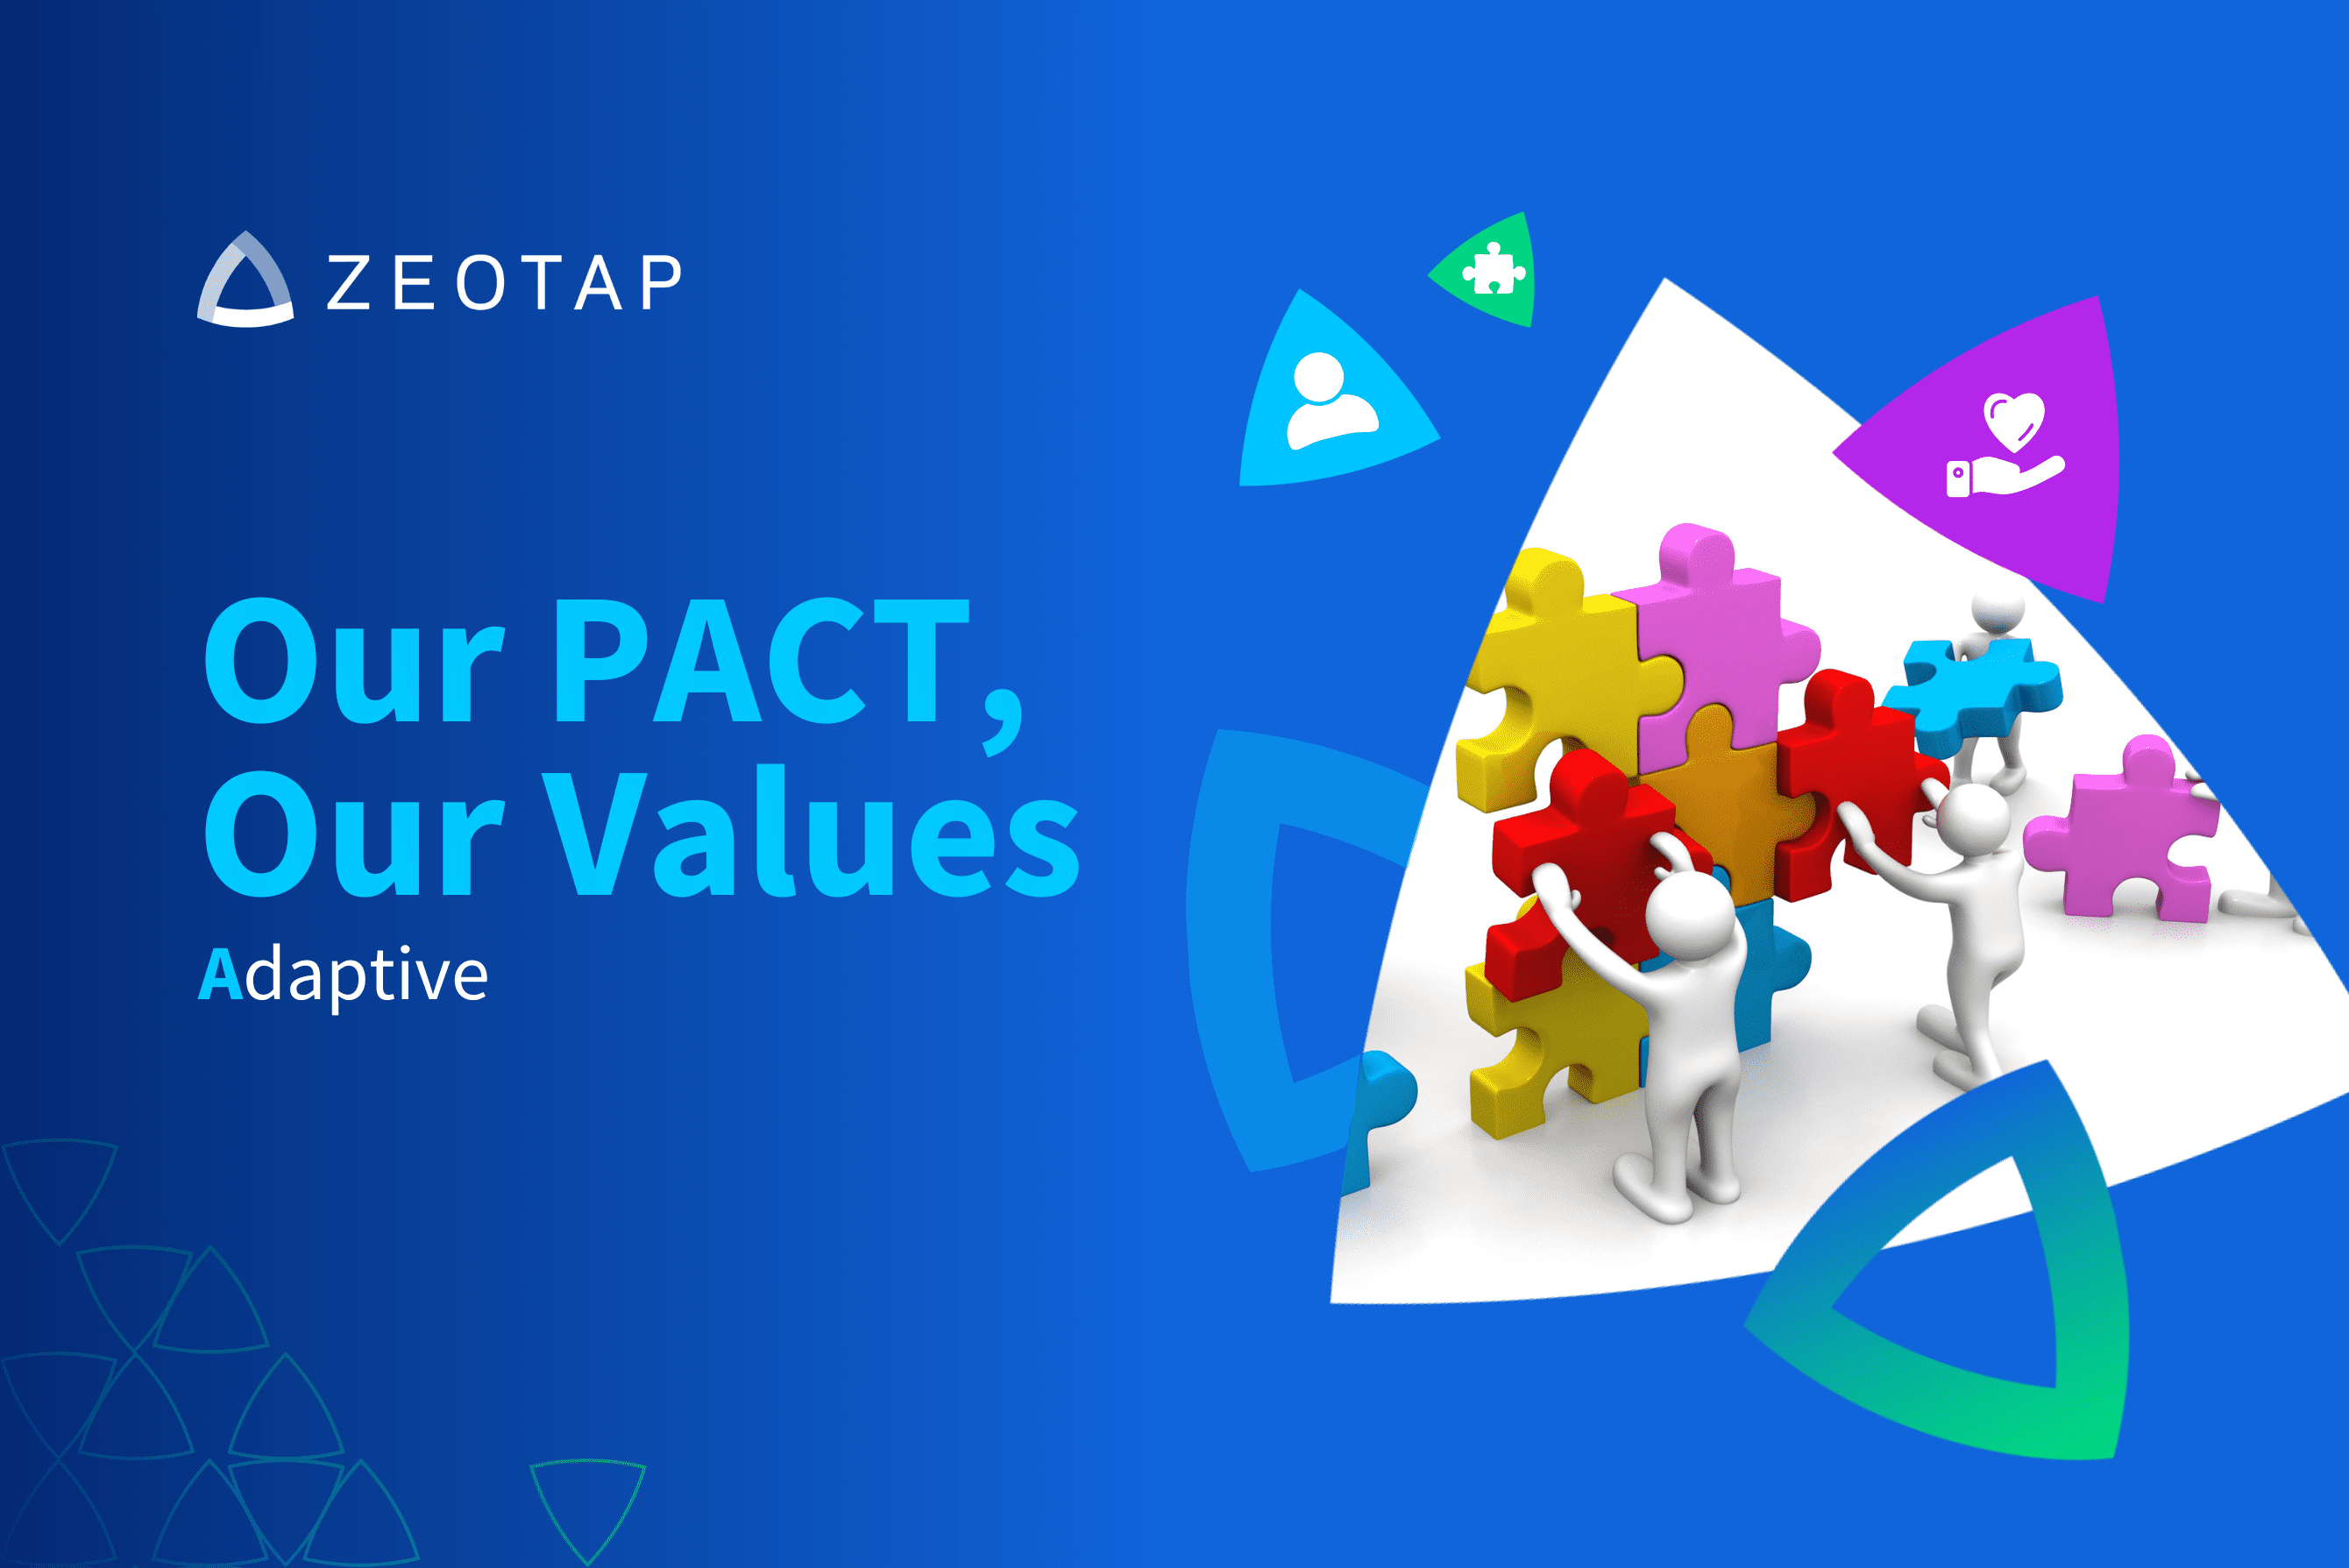 Zeotap company values: adaptive